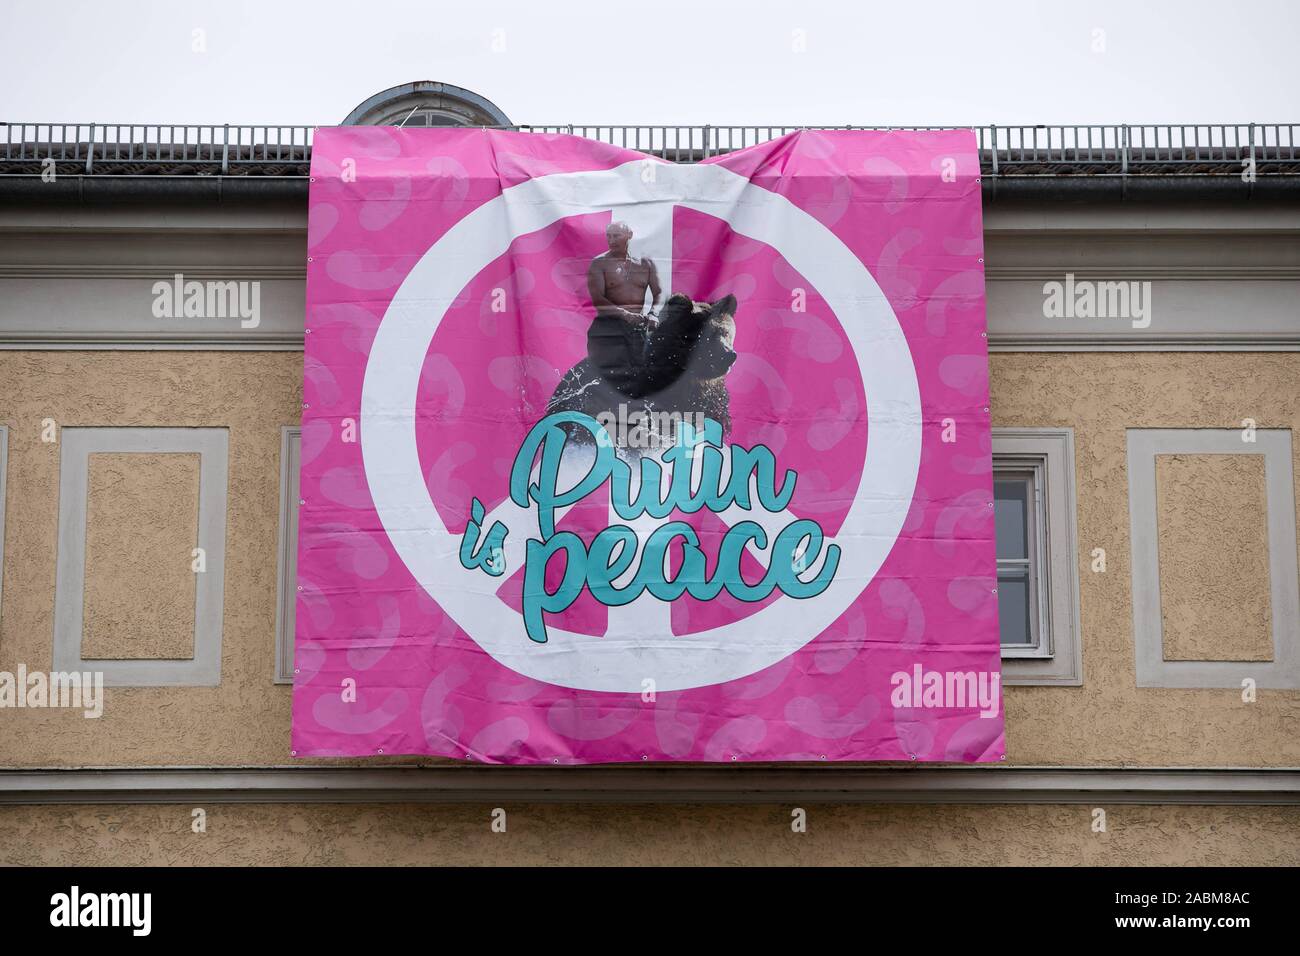 Poutine poster à la Prinzregentenstraße 65 construction à Munich. Au-dessus de la 'lettrage Poutine est la paix" et un grand symbole de paix sur un fond rose, le président russe Vladimir Poutine est représenté à cheval un ours avec son haut du corps gratuitement. [Traduction automatique] Banque D'Images